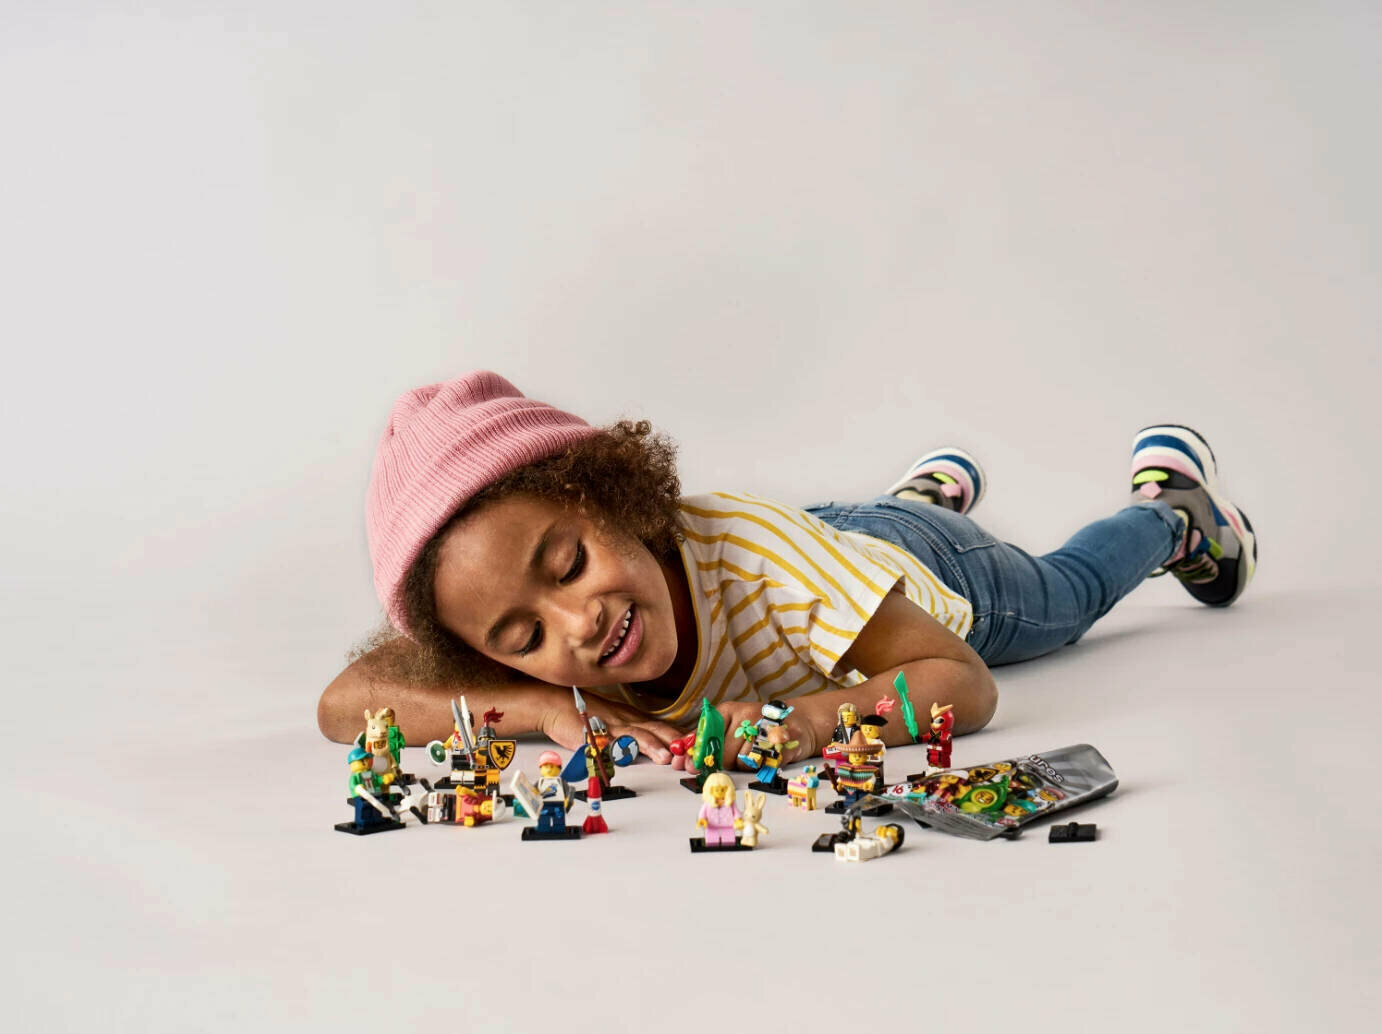 Конструктор LEGO Minifigures Series #20 71027-03 Девочка в костюме стручка гороха / Peapod Costume Girl (col20-3)